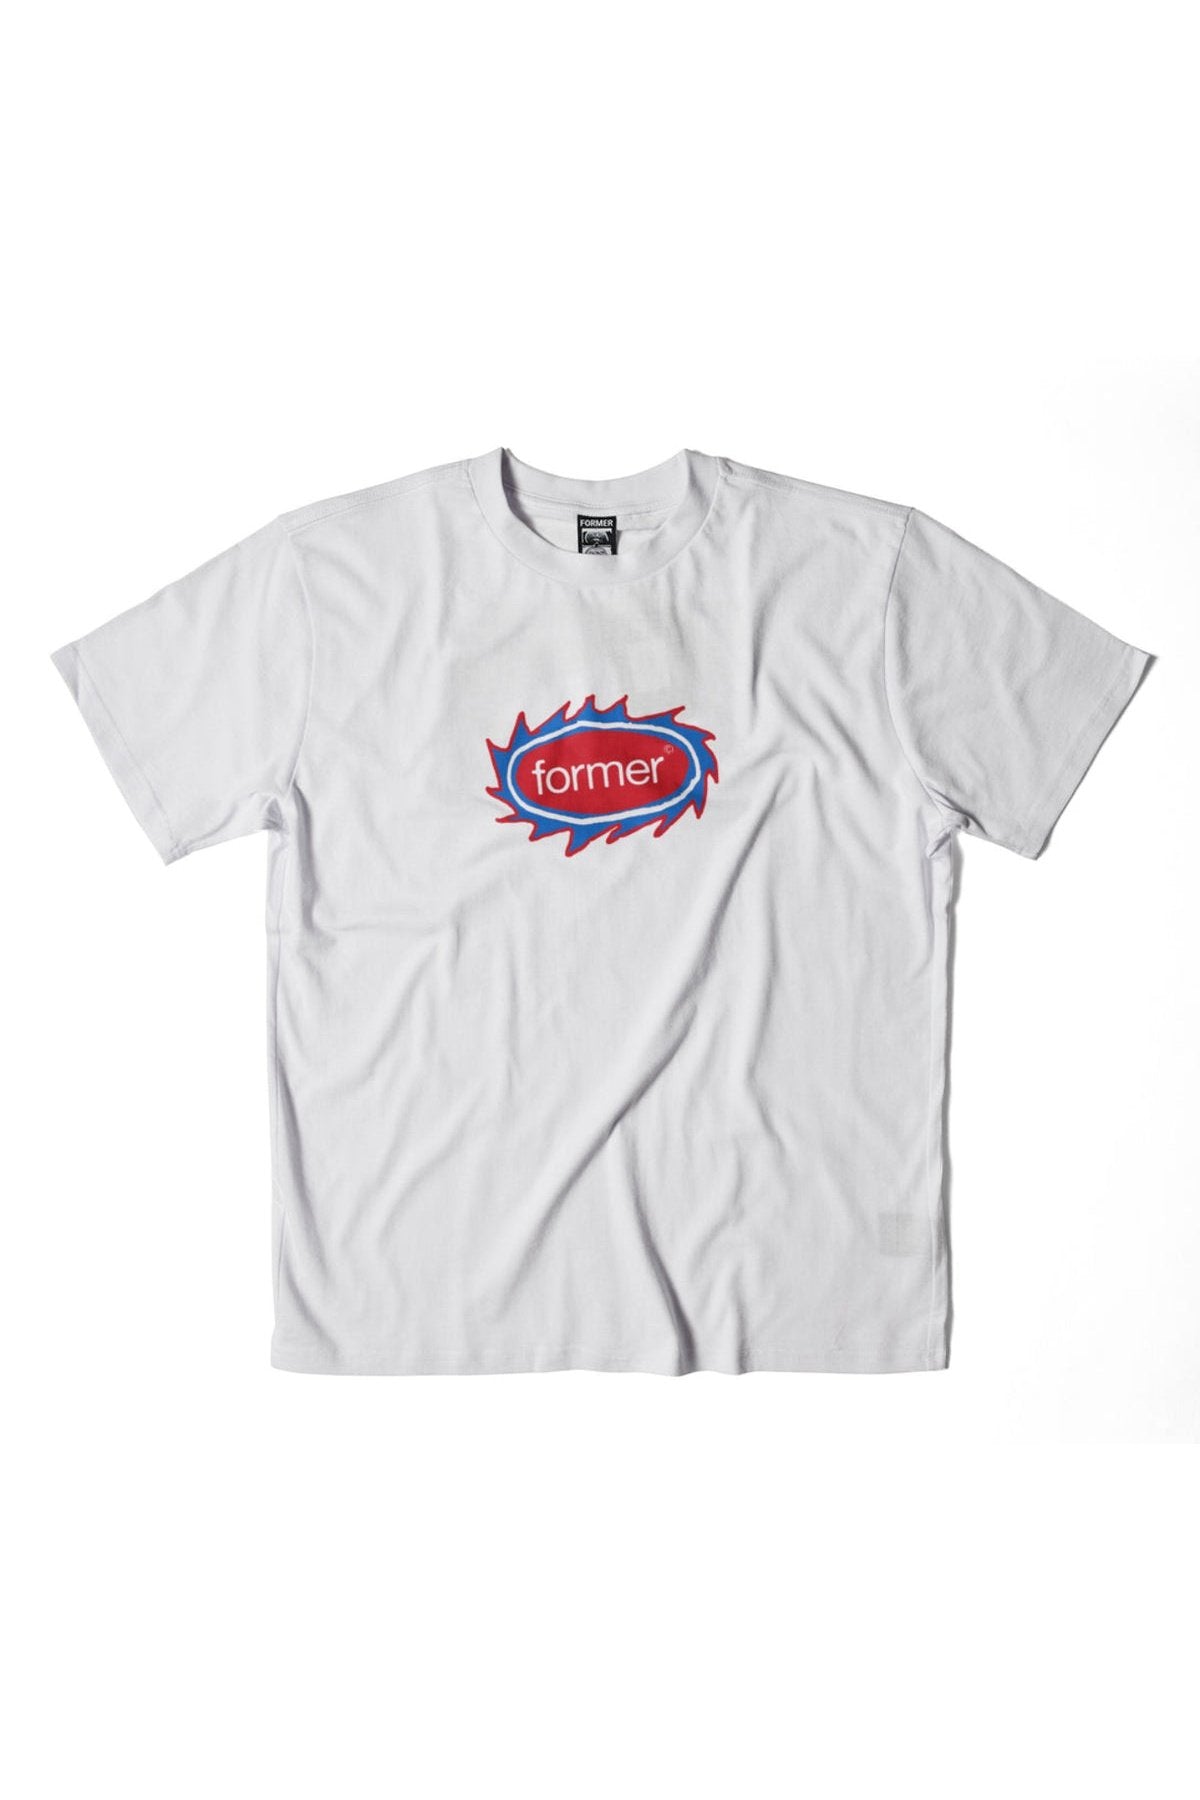 Former orbit t-shirt - white